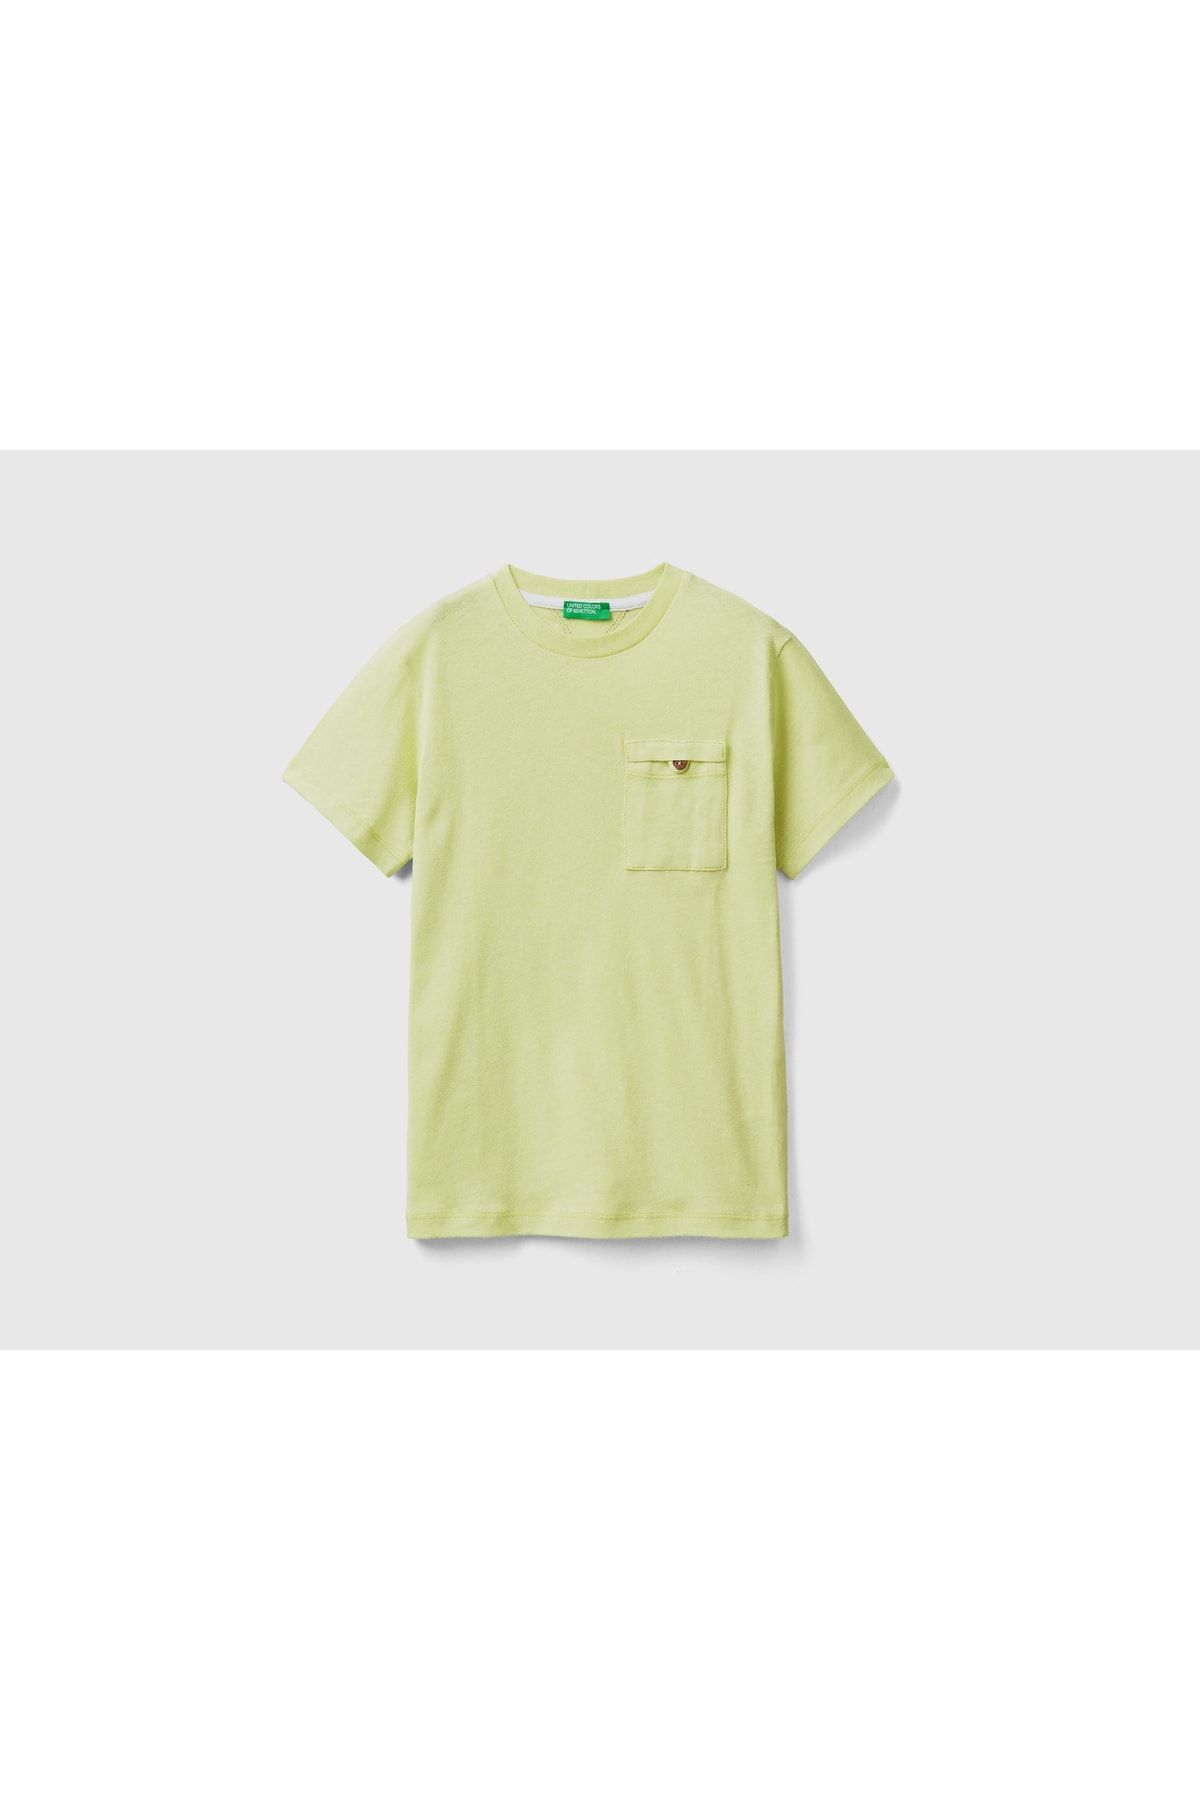 United Colors of Benetton Erkek Çocuk Açık Yeşil Cebi Düğmeli T-shirt Açık Yeşil